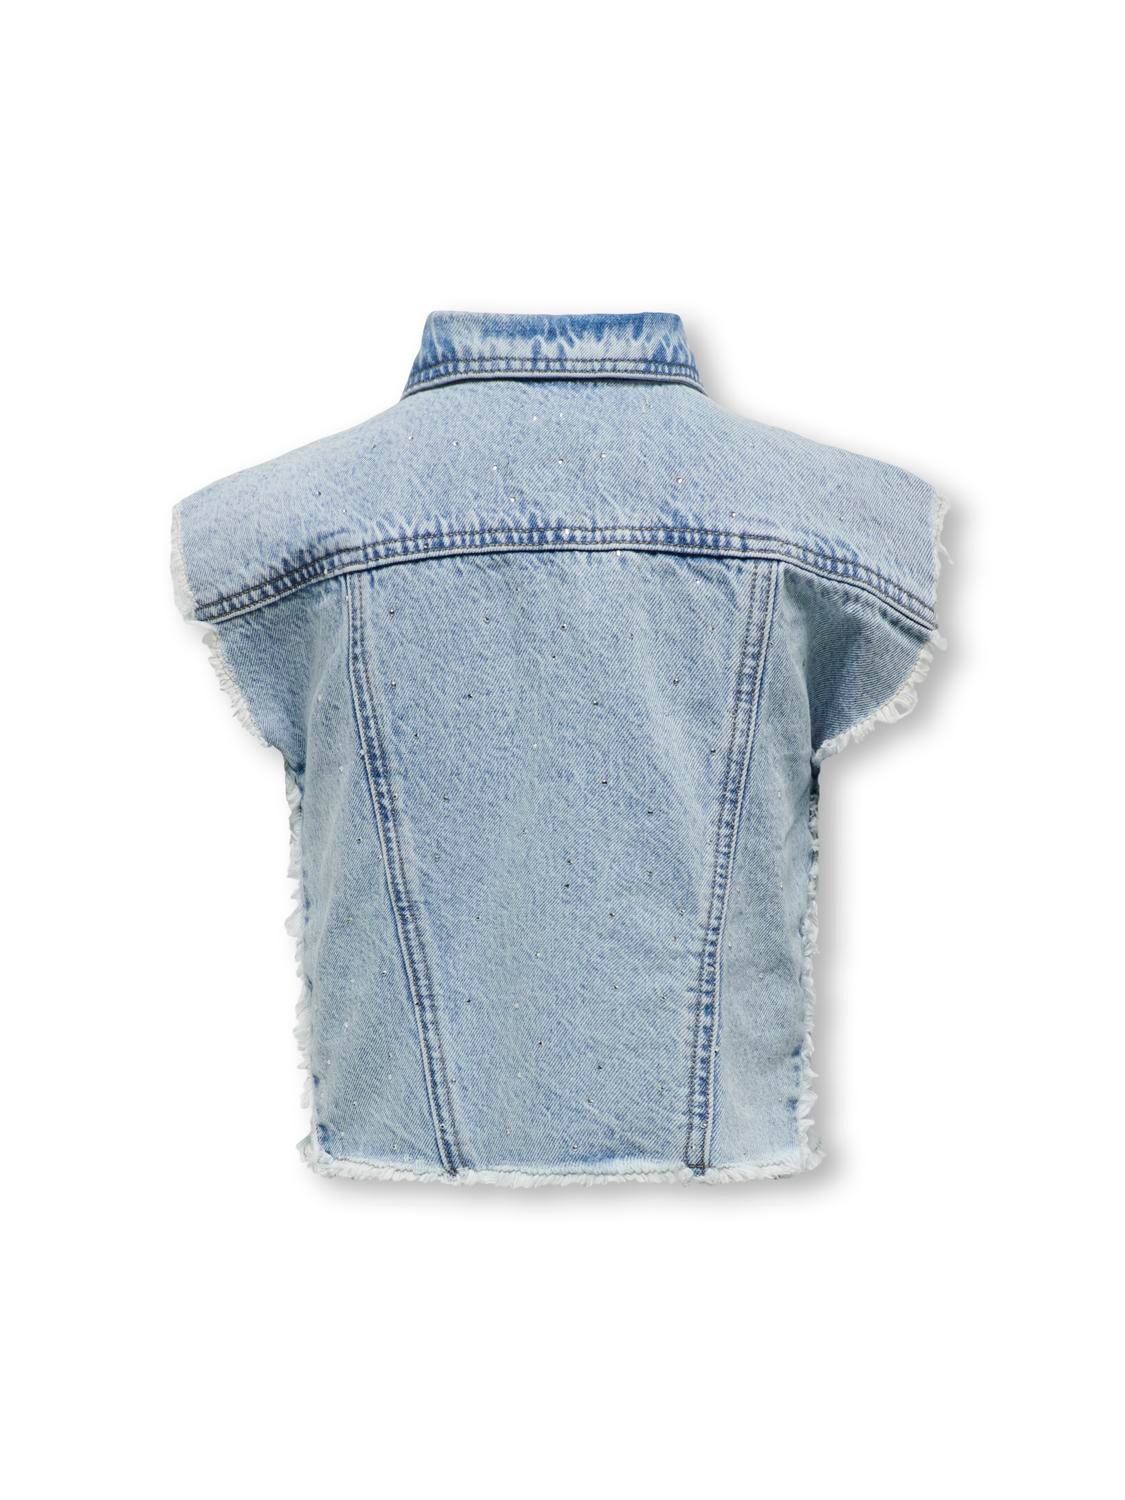 ONLY Denim vest with pockets -Light Blue Denim - 15322353